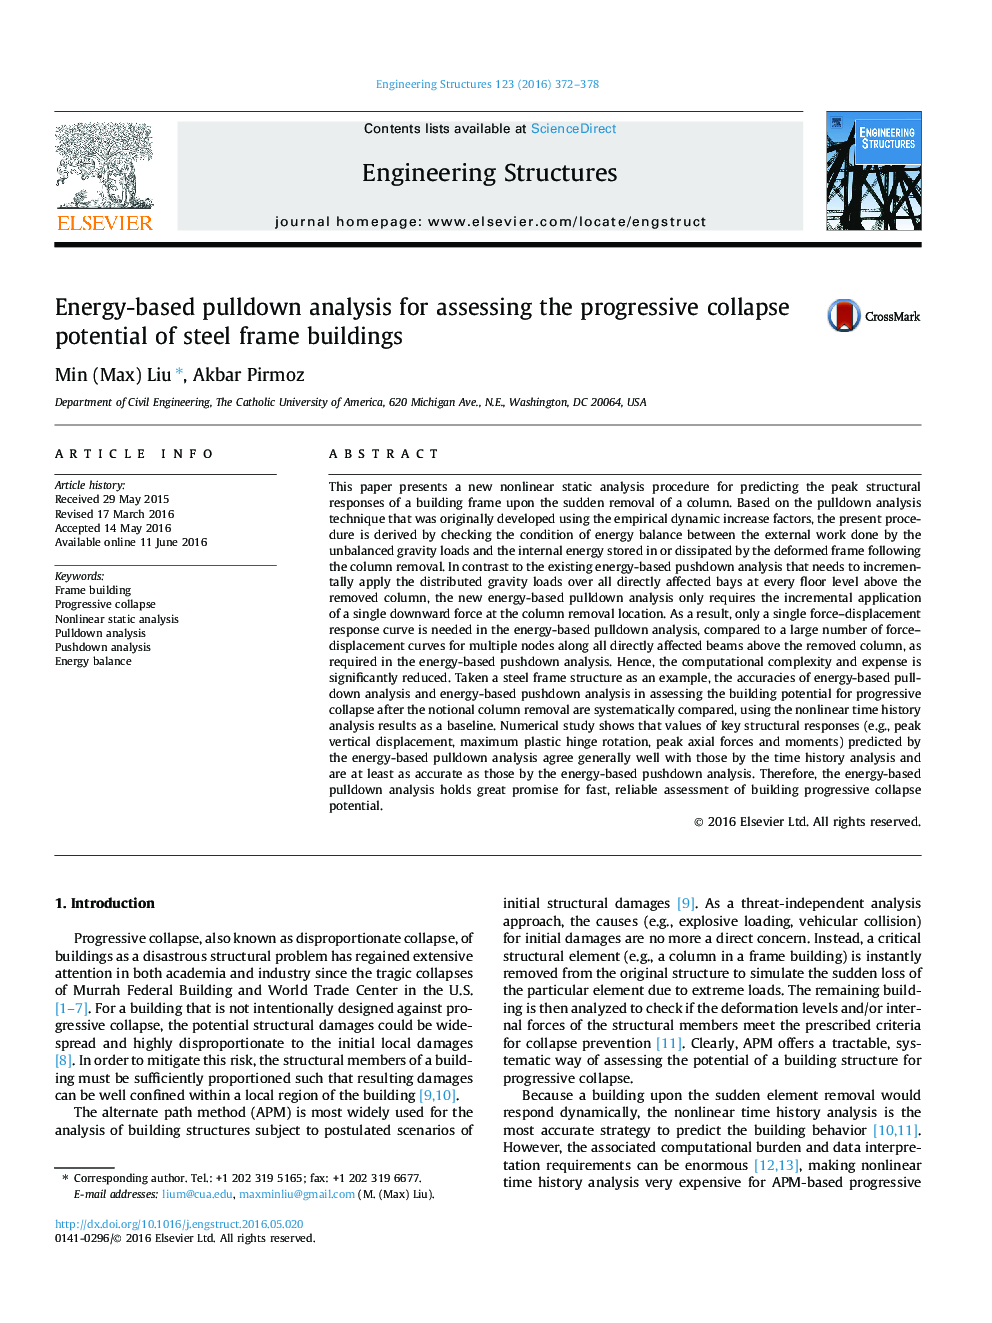 تجزیه و تحلیل Pulldown بر اساس انرژی برای ارزیابی پدیده فروپاشی پیشرفته ساختمان های قاب فولادی